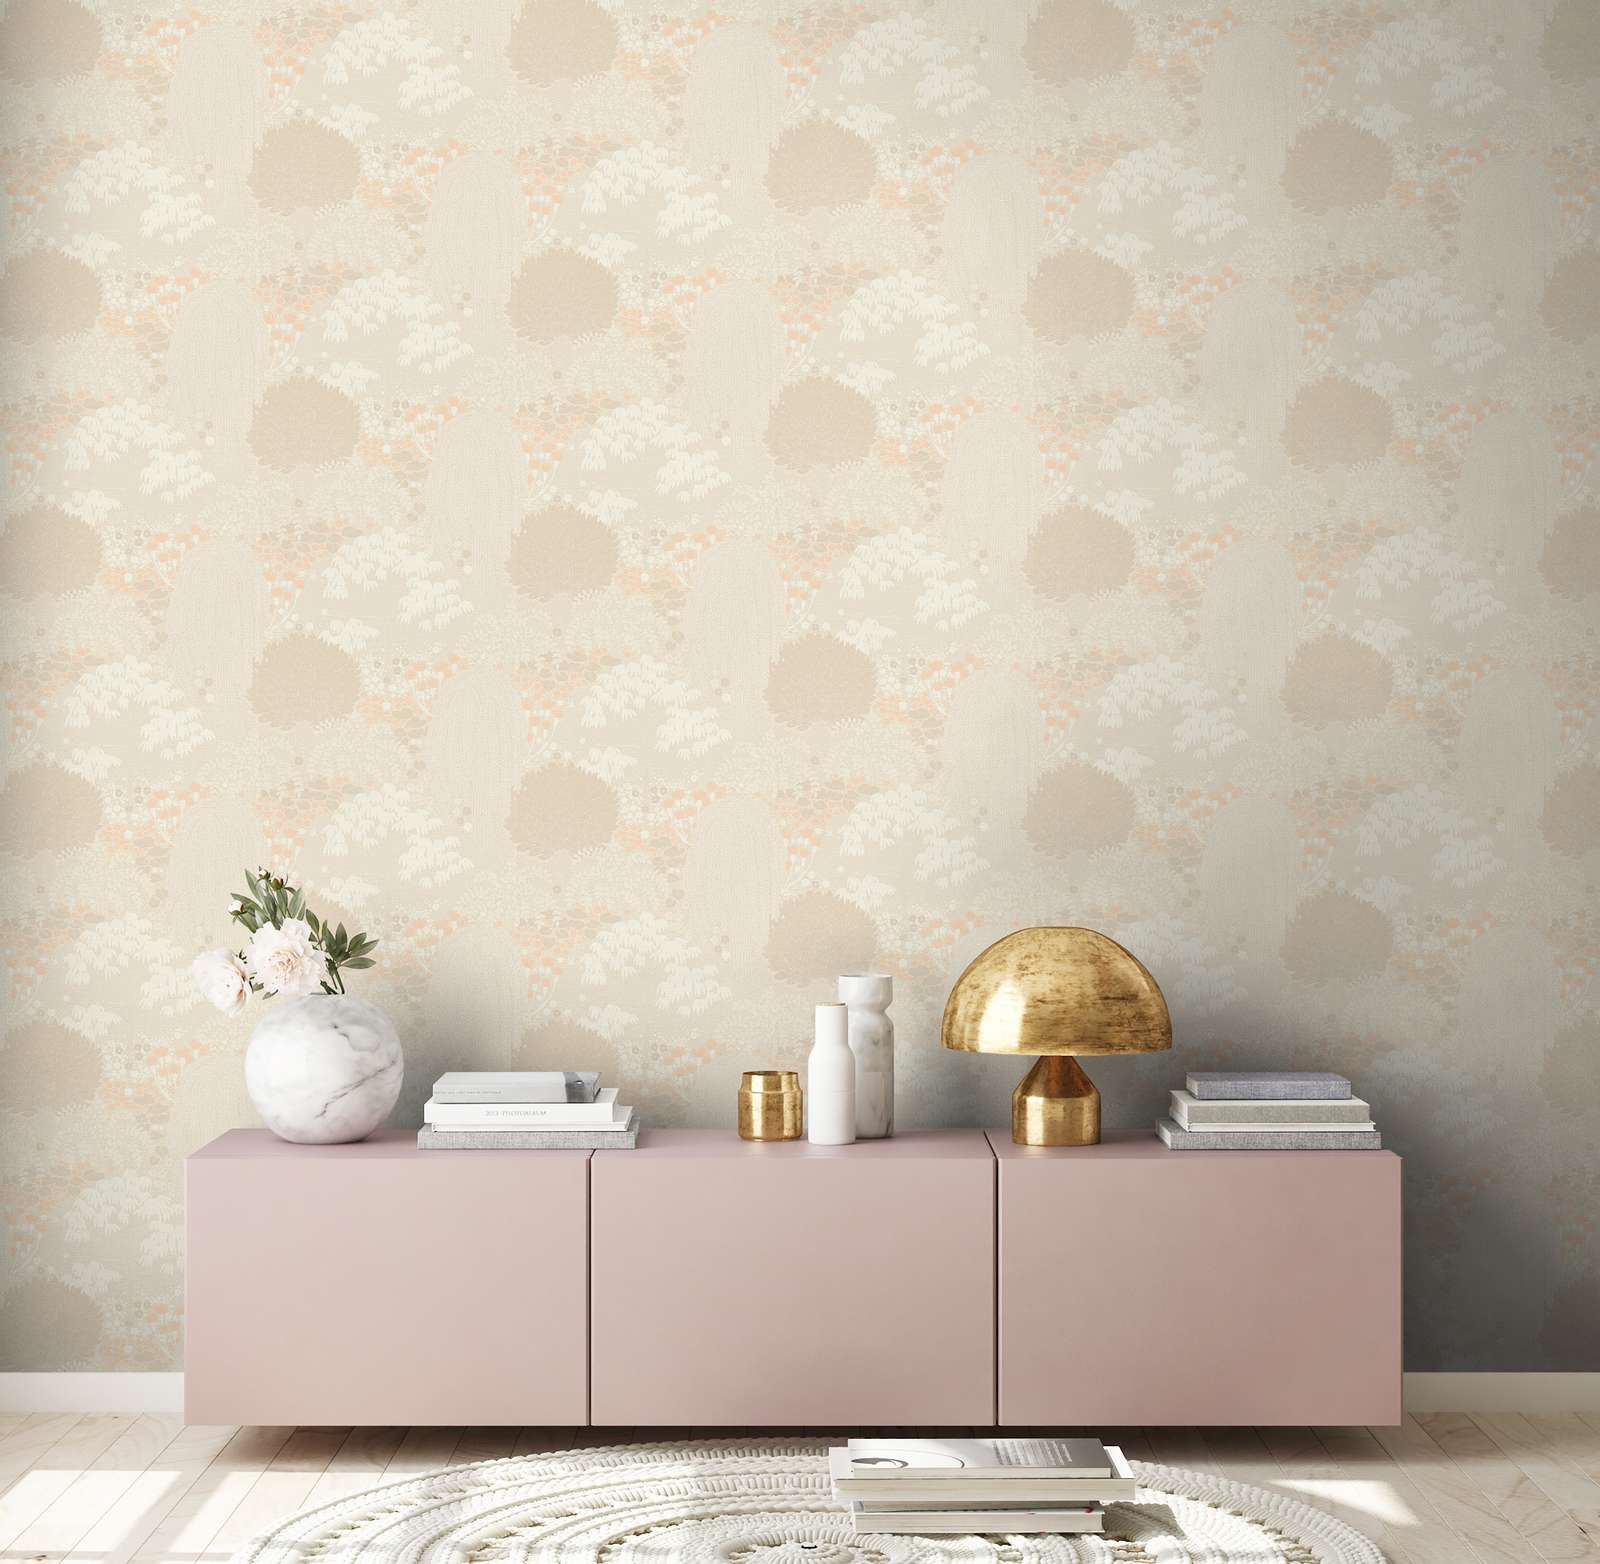             papier peint en papier floral avec feuilles légèrement structuré, mat - beige, crème, rose
        